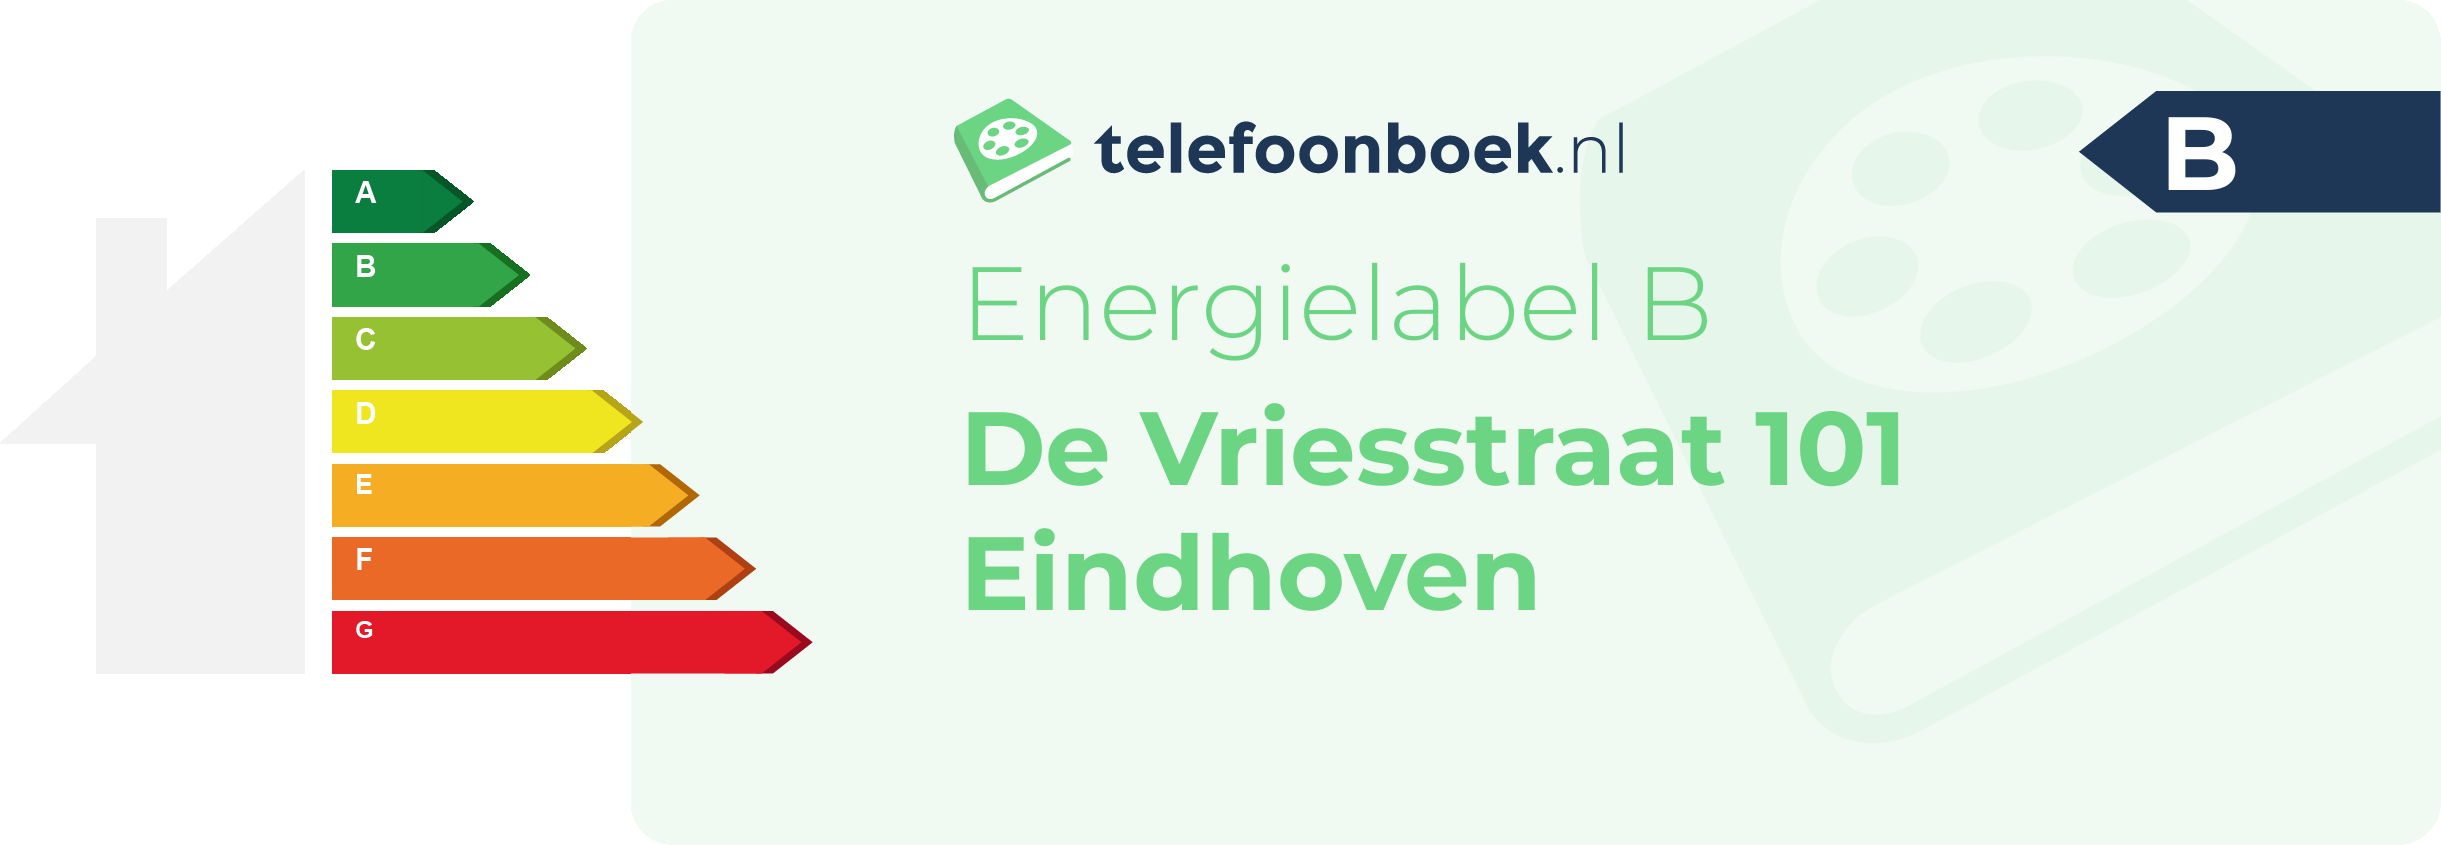 Energielabel De Vriesstraat 101 Eindhoven